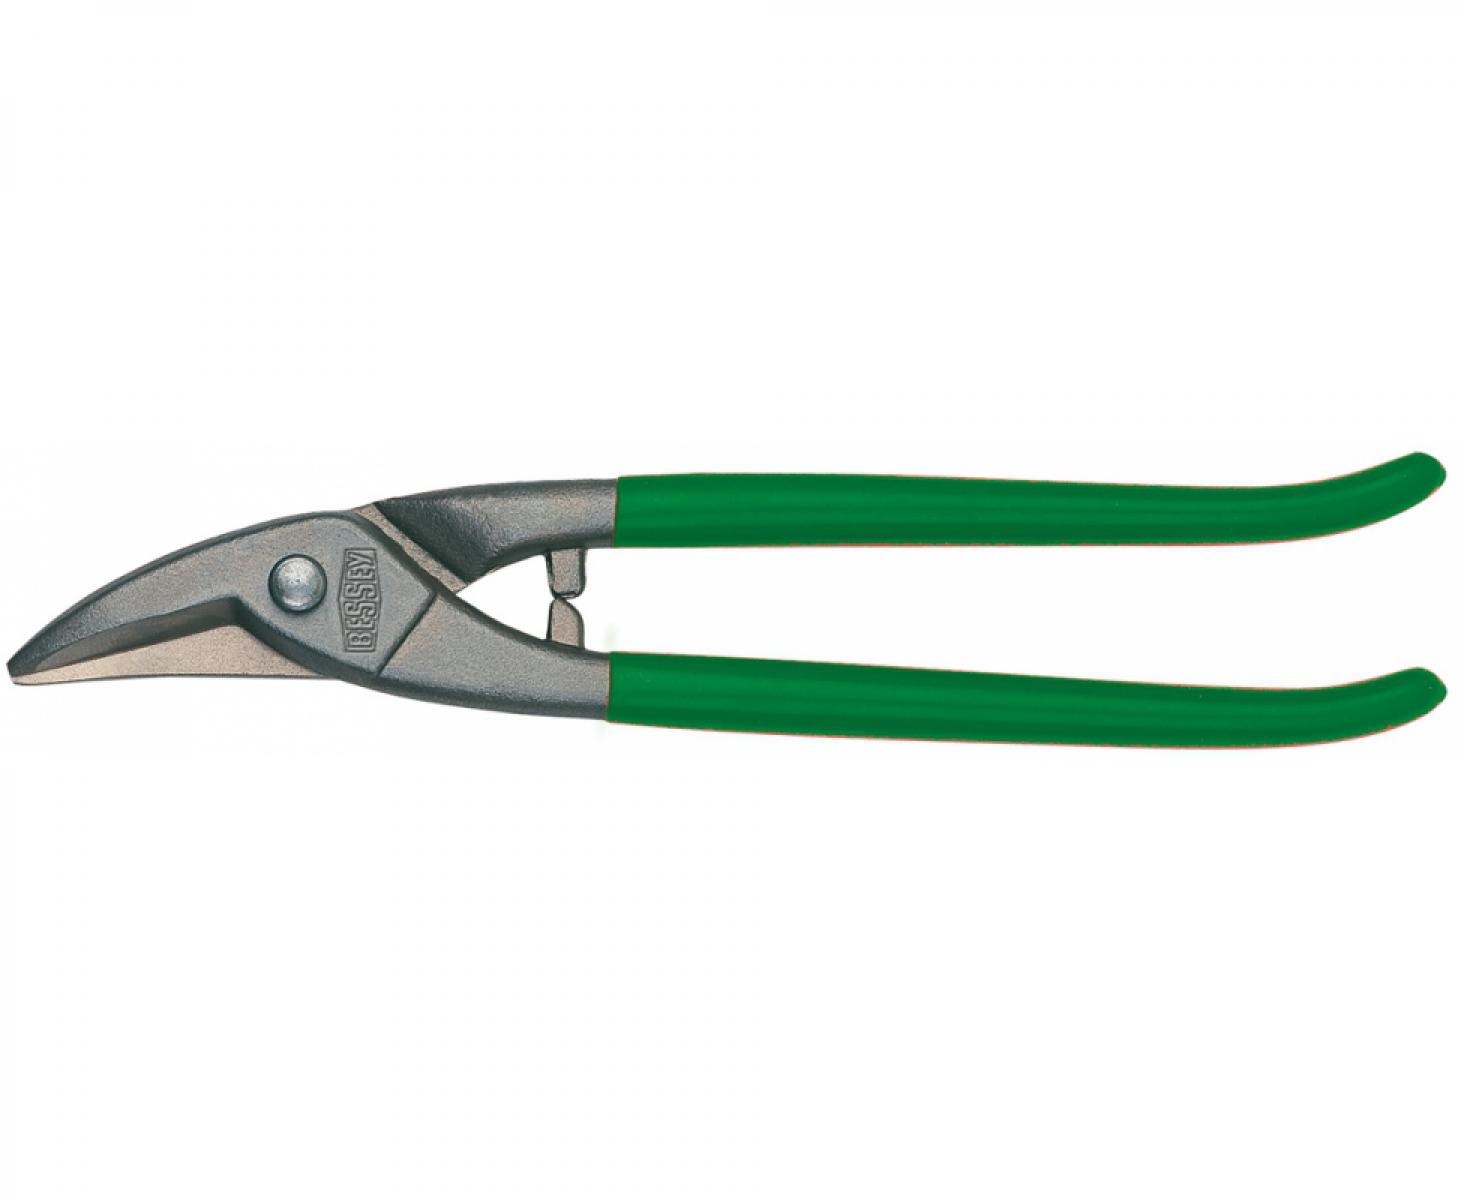 Ножницы для прорезания отверстий в листовом металле Erdi ER-D107-250 праворежущие